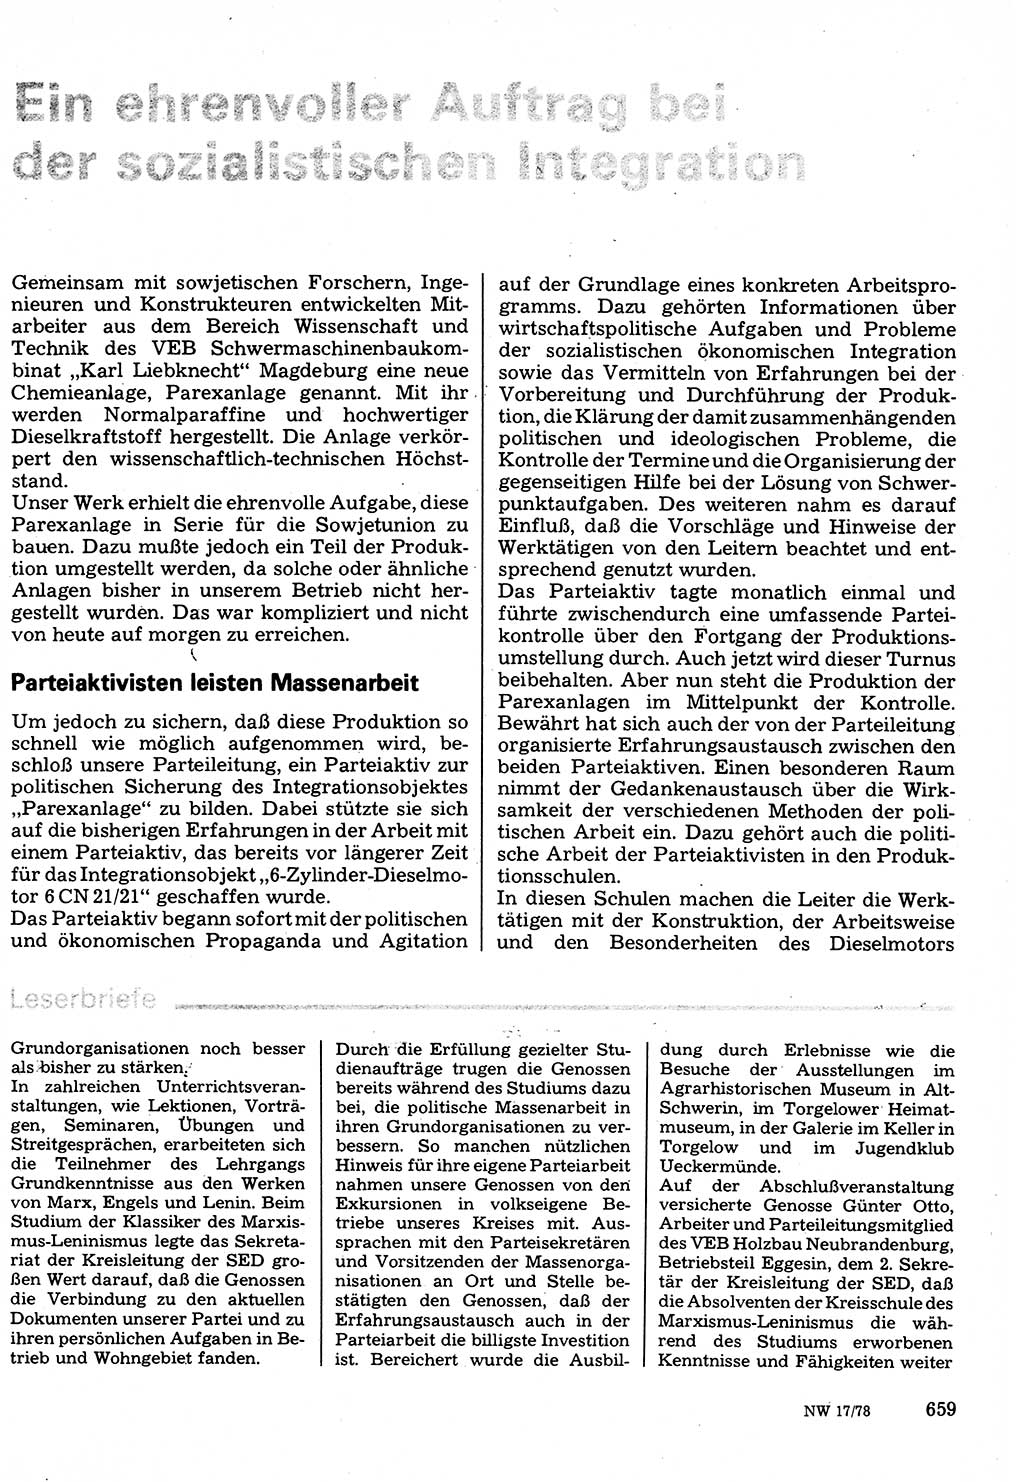 Neuer Weg (NW), Organ des Zentralkomitees (ZK) der SED (Sozialistische Einheitspartei Deutschlands) für Fragen des Parteilebens, 33. Jahrgang [Deutsche Demokratische Republik (DDR)] 1978, Seite 659 (NW ZK SED DDR 1978, S. 659)